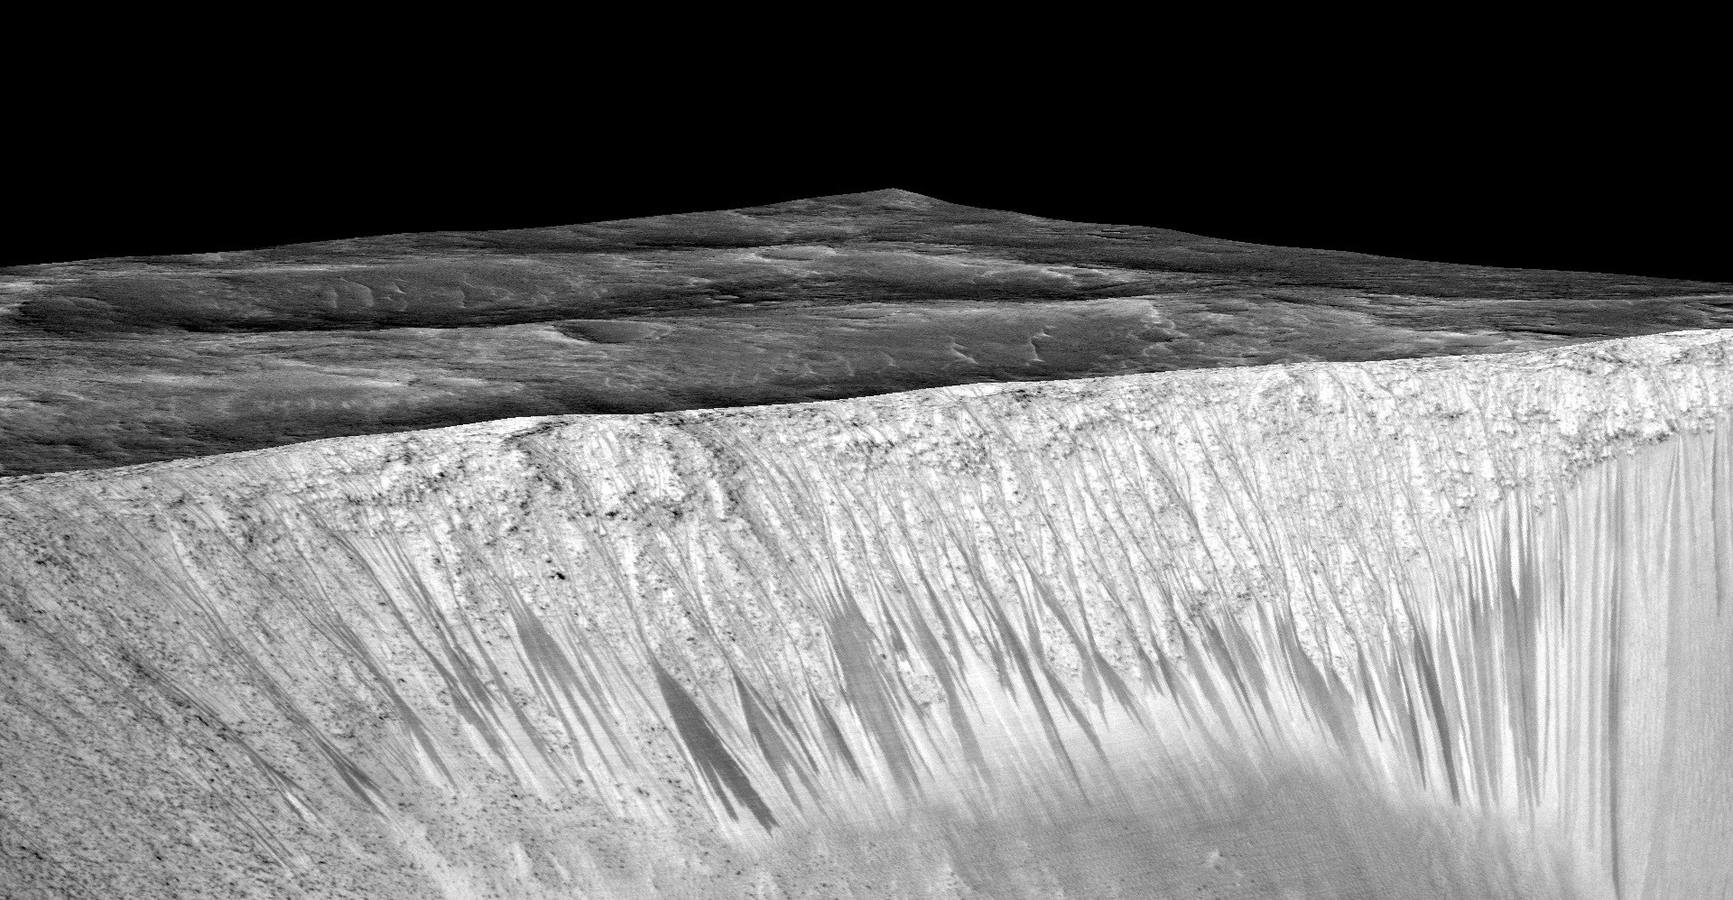 Los científicos no están seguros de dónde viene el agua, pero barajan tres hipótesis: podría tratarse de acuíferos salinos, de hielo subterráneo o quizás de la condensación de la fina atmósfera marciana.